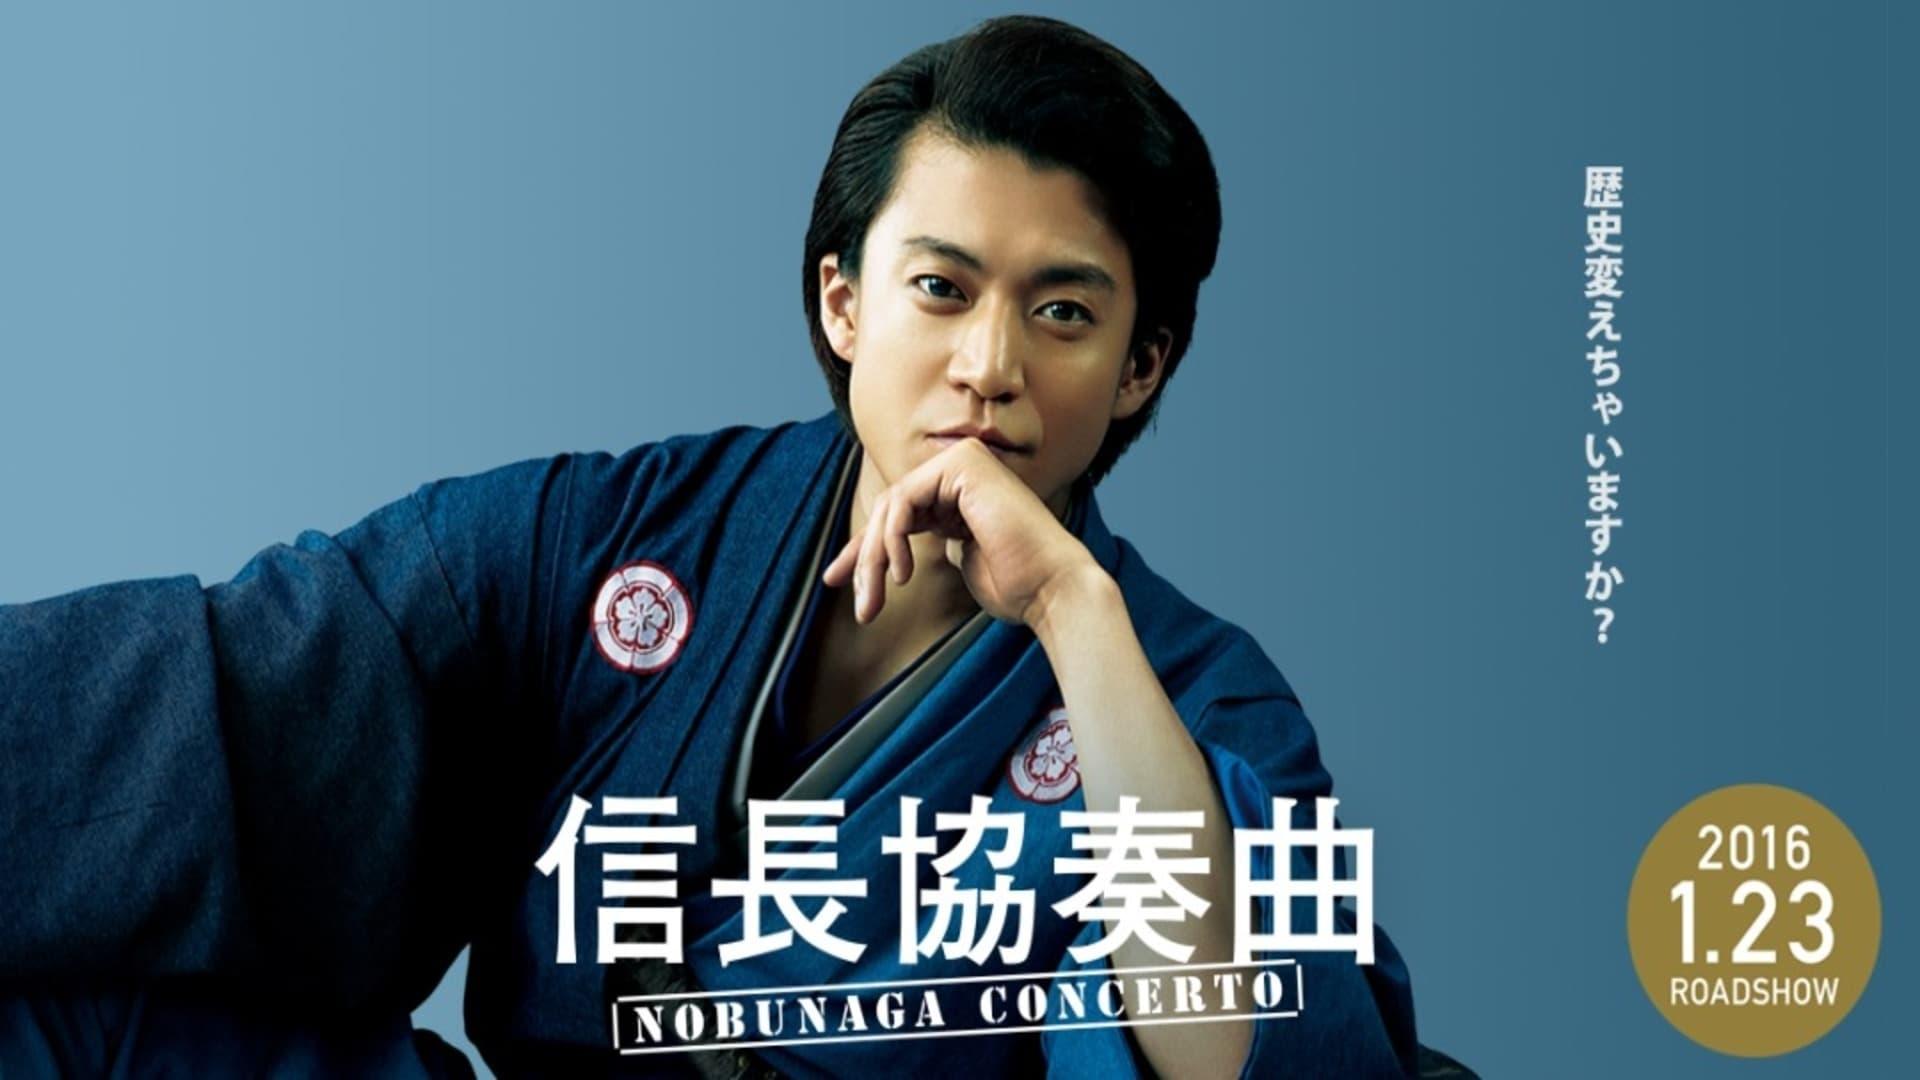 Nobunaga Concerto: The Movie backdrop